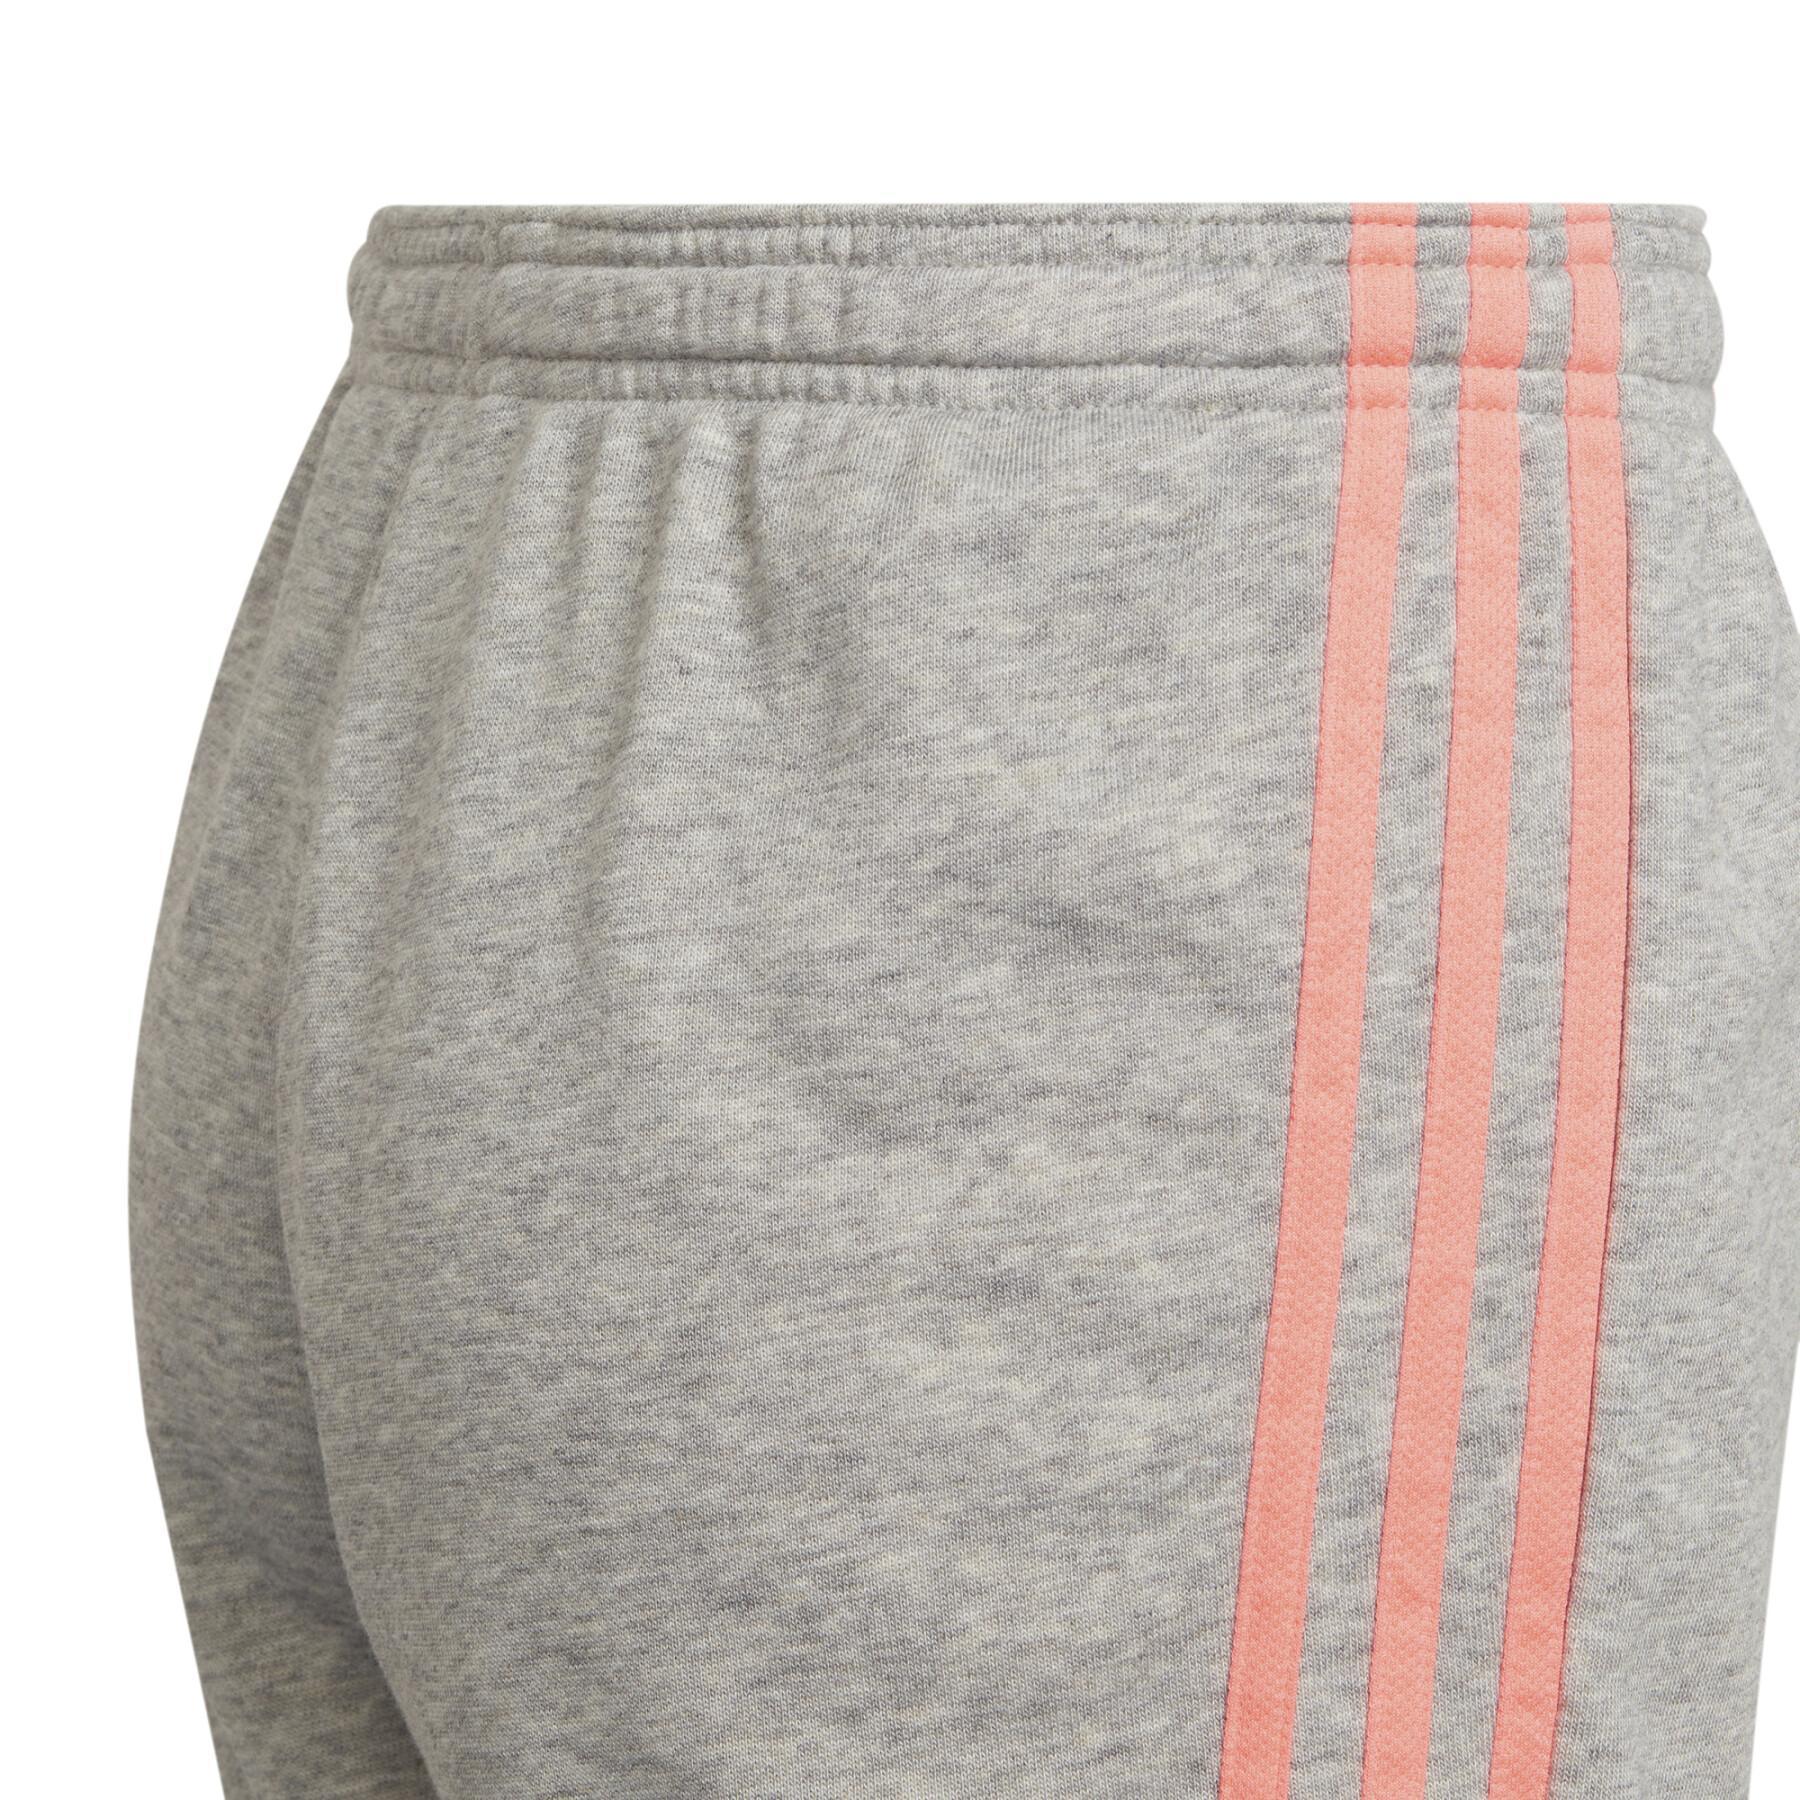 Short broek voor meisjes adidas Essentials 3-Stripes